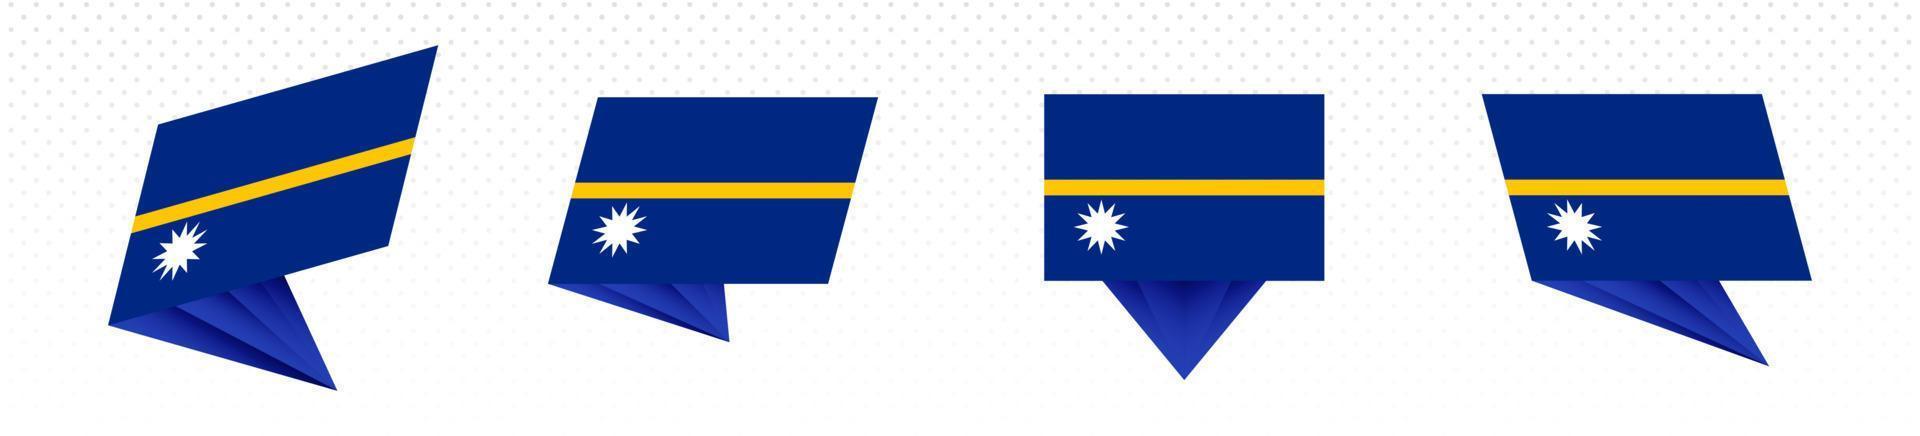 Flagge von Nauru im modernen abstrakten Design, Flaggensatz. vektor